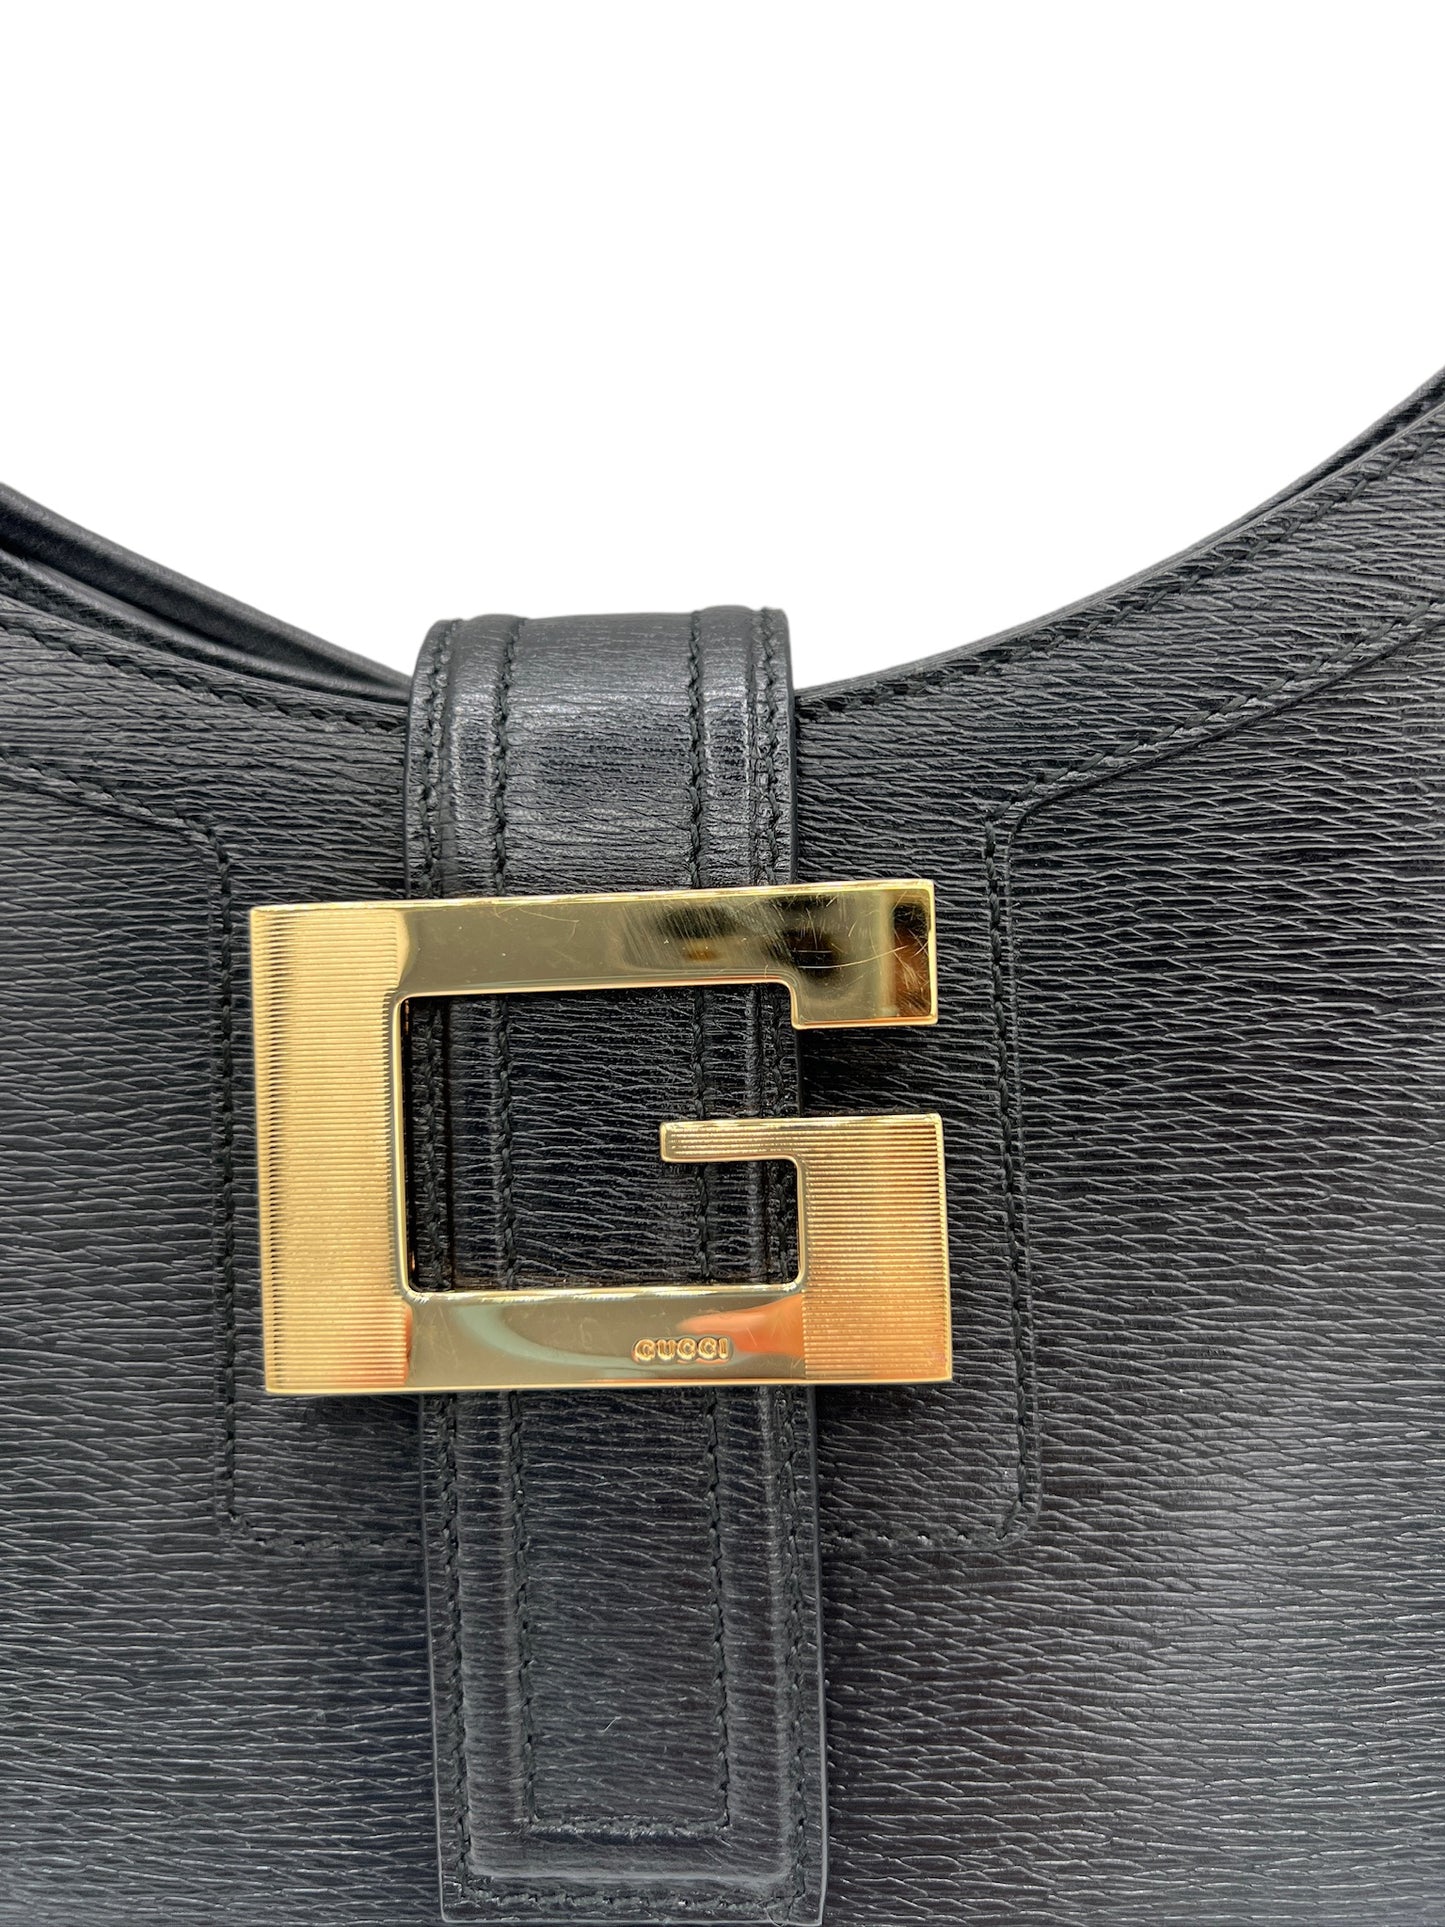 GUCCI - Black Leather Shoulder Bag